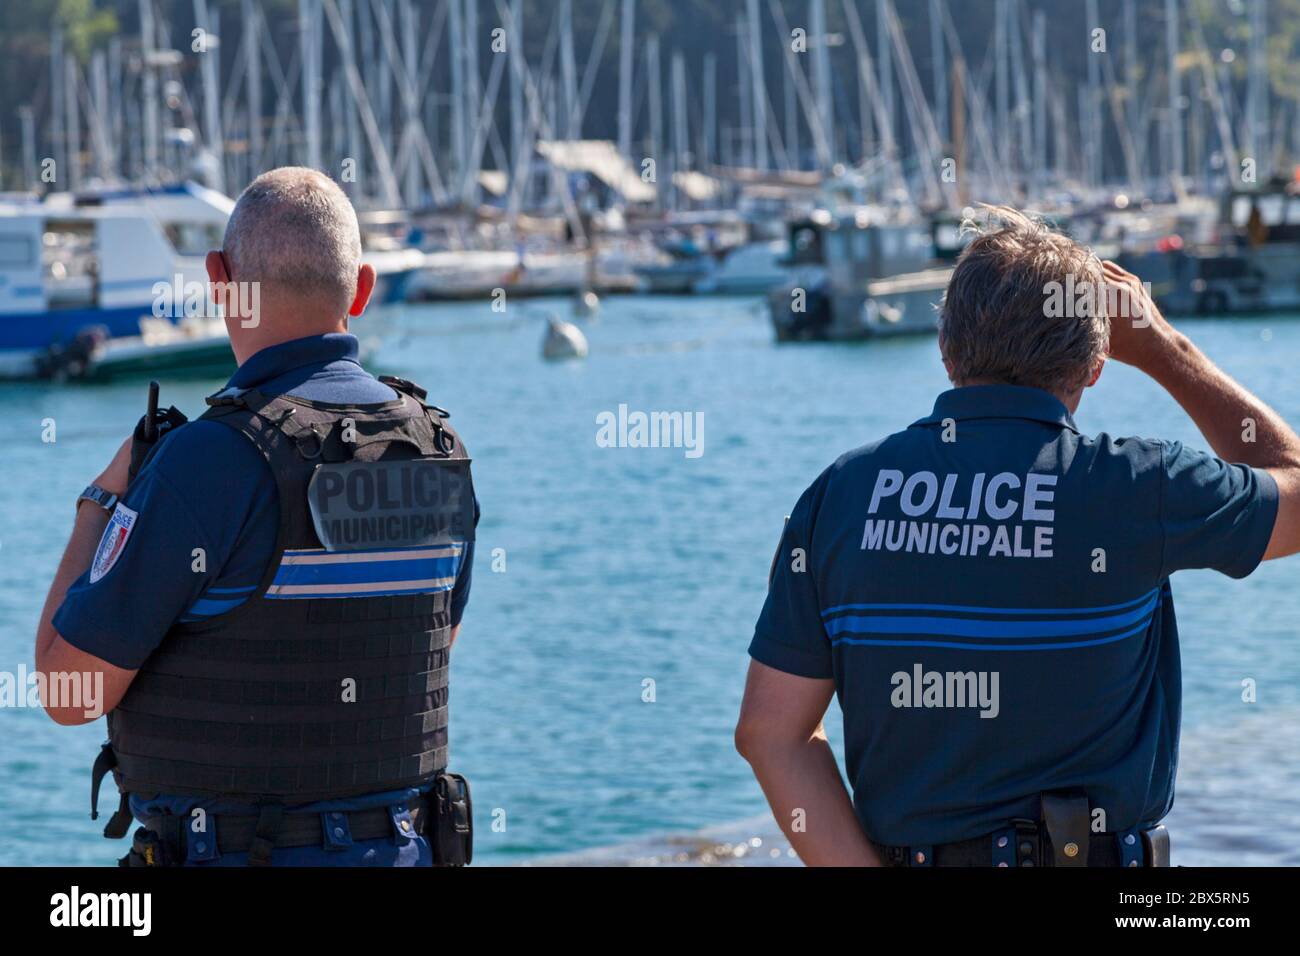 Saint-Malo, France - juin 02 2020 : deux policiers municipaux en intervention au port. Banque D'Images